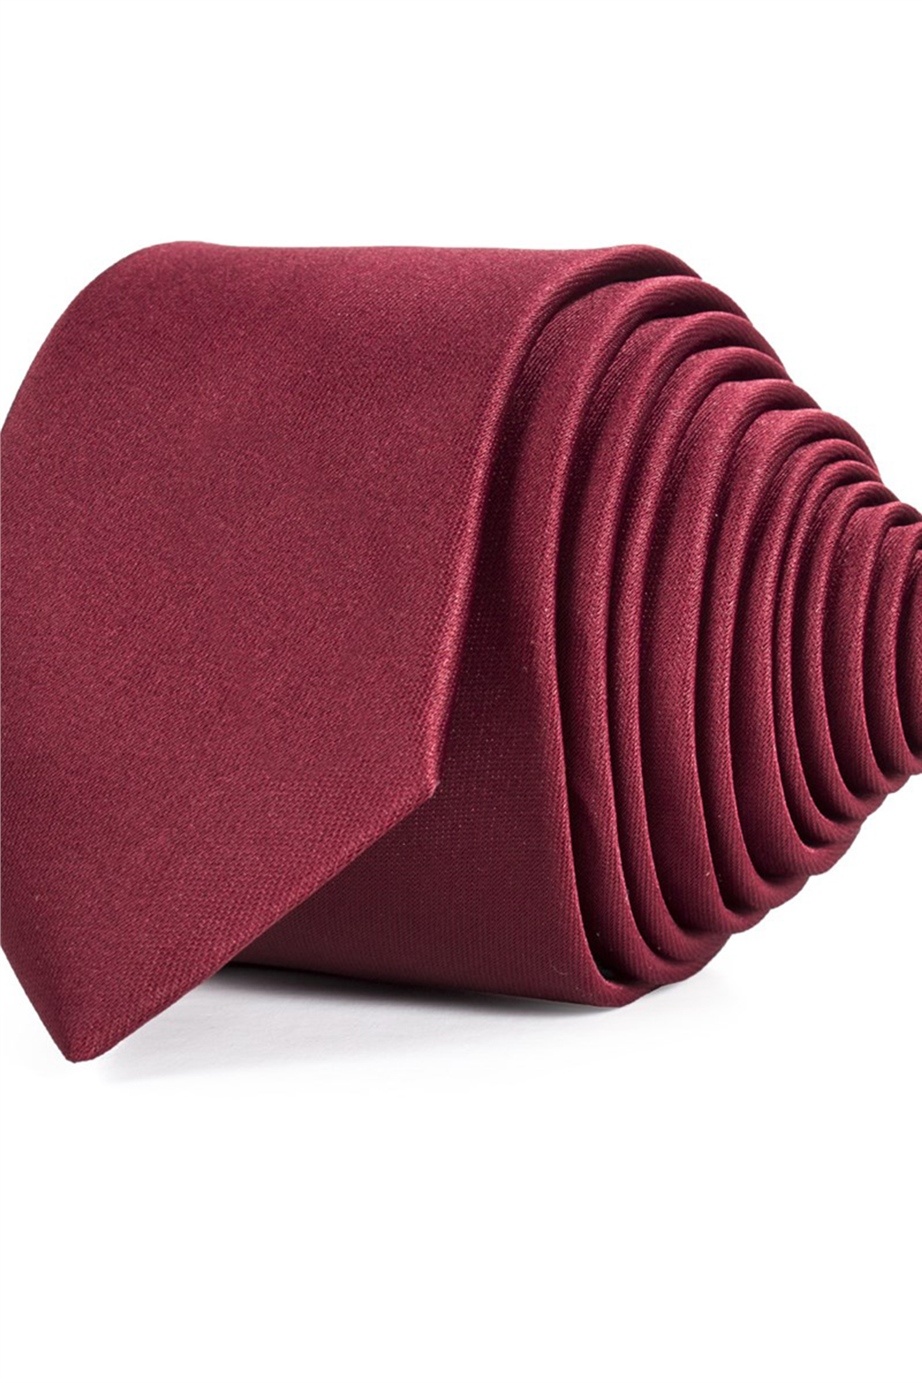 Bordó színű vékony nyakkendő